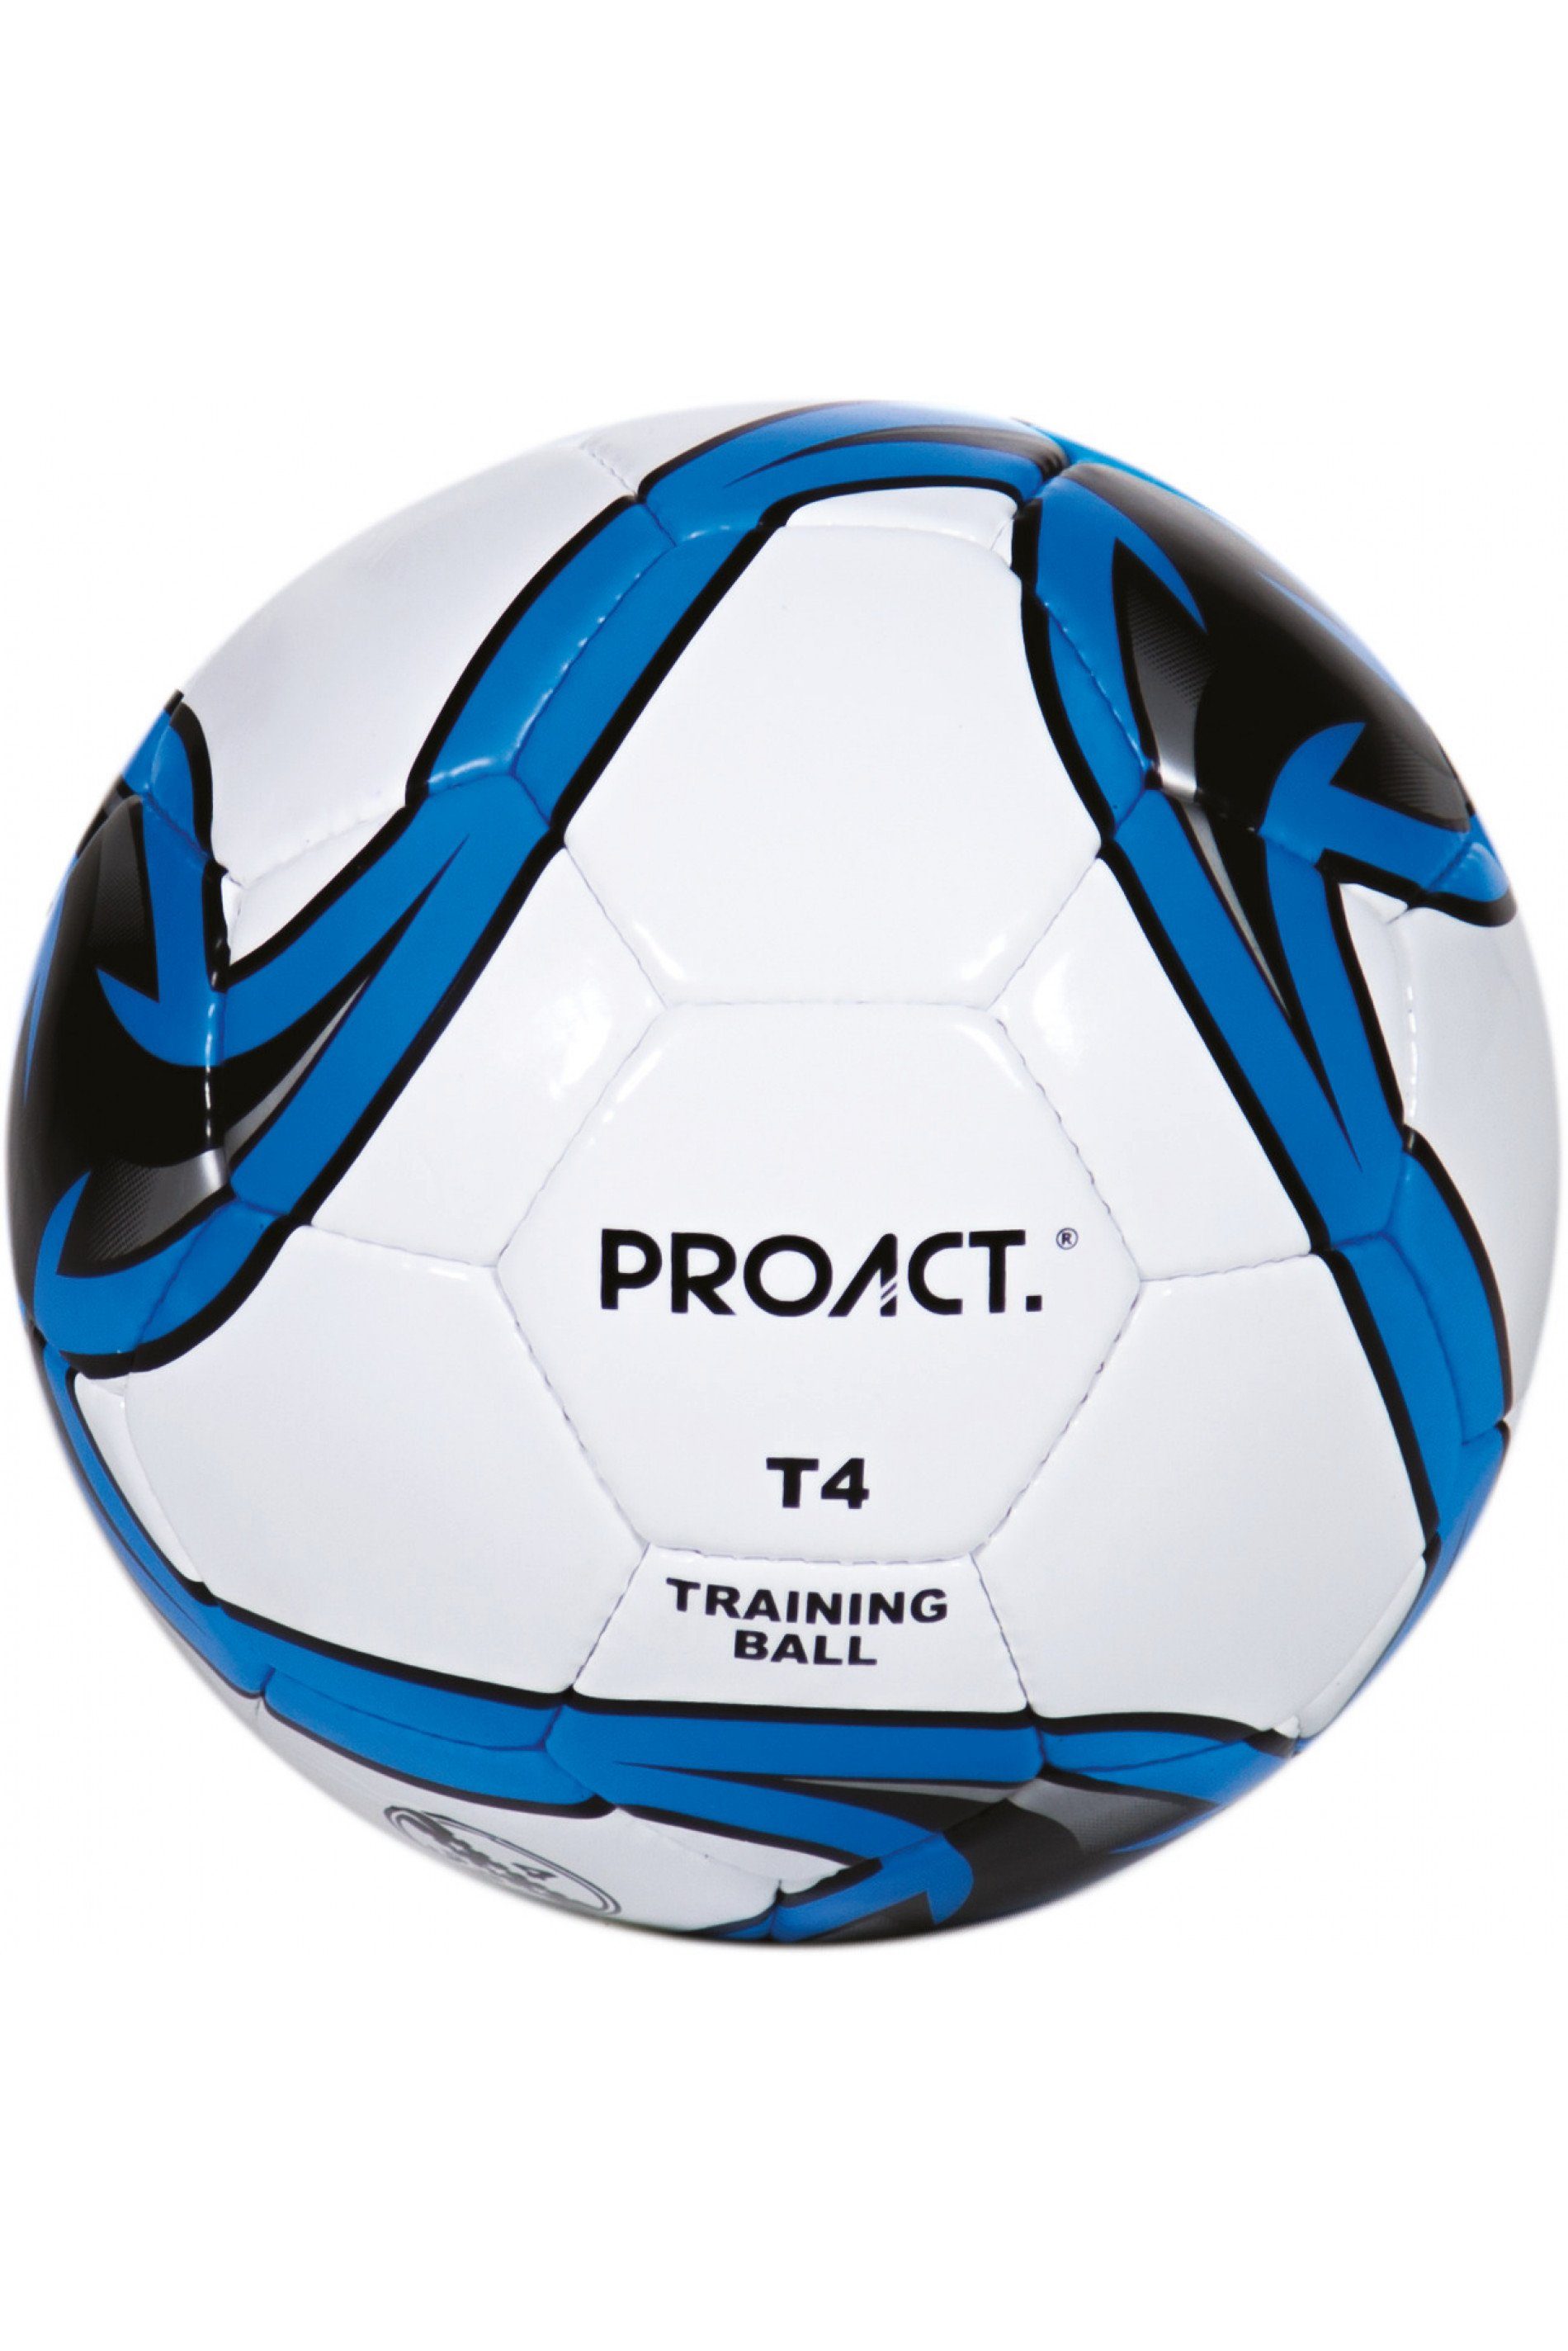 coole-fun-t-shirts Fußball »PROACT Ball Fußball Glider2 Fussball  Trainingsball Gr.4 Handgenäht Kinder Jugendliche und Erwachsene Spielball«  online kaufen | OTTO